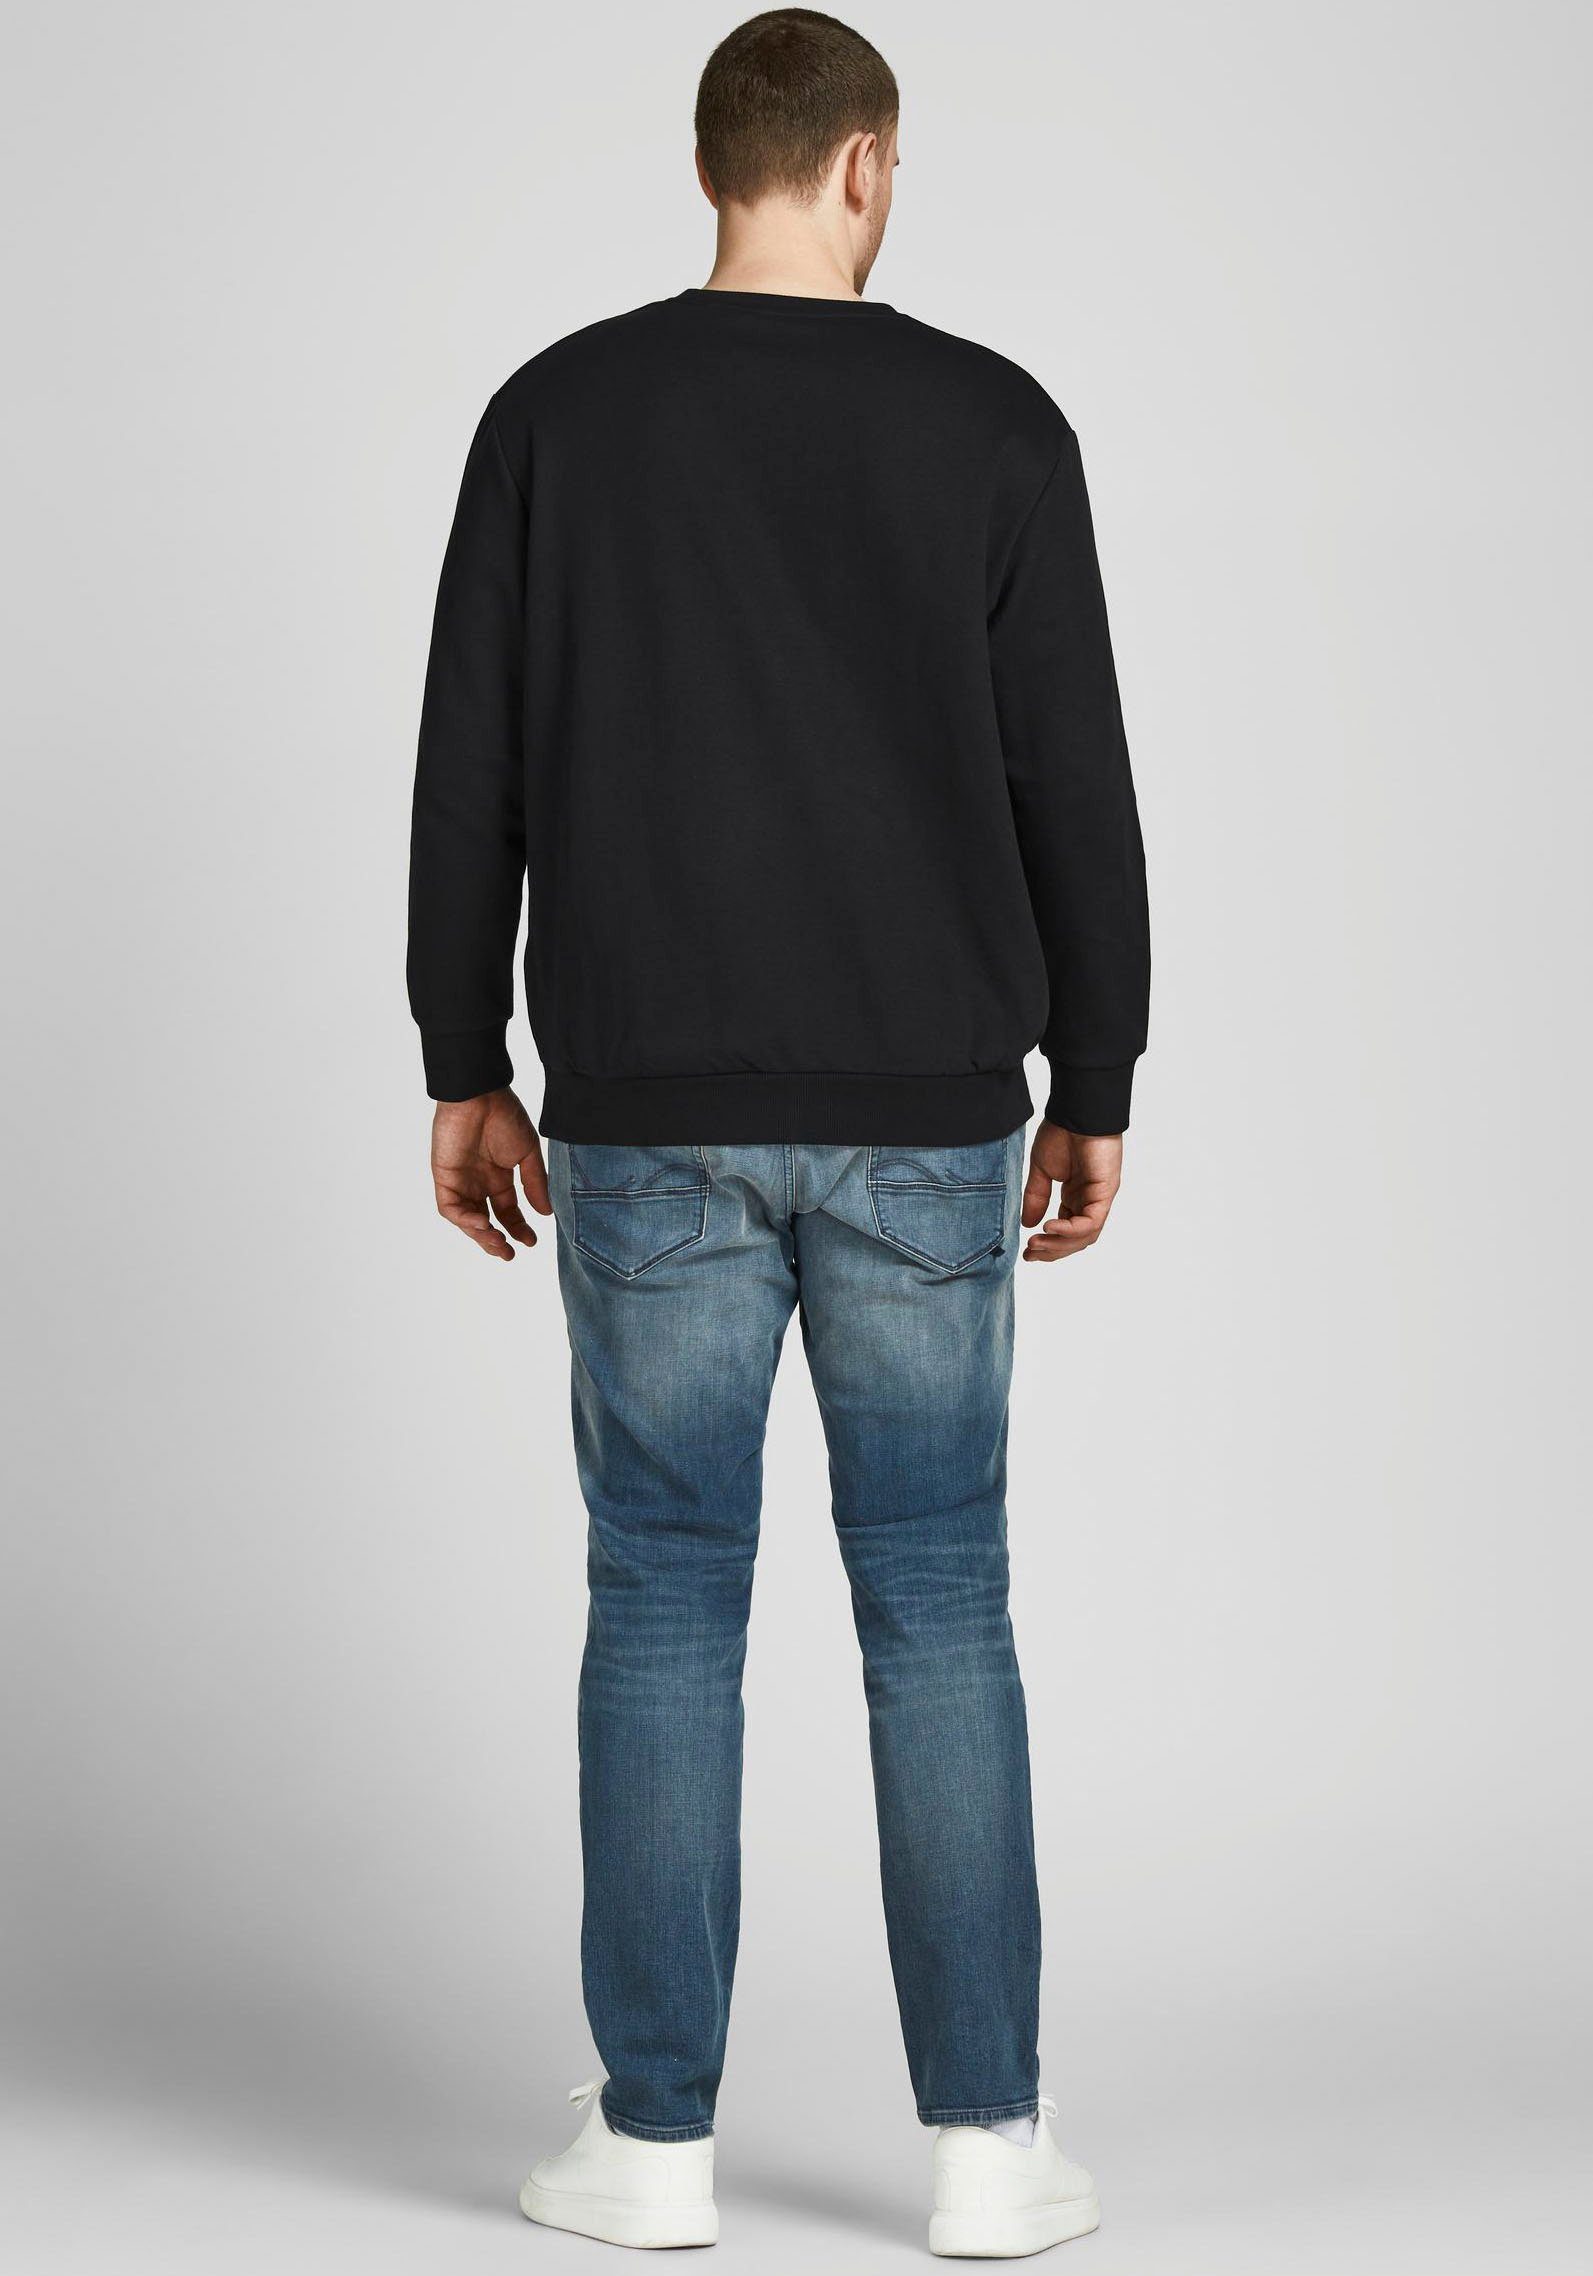 & Jack PlusSize (Packung) BASIC Jones Sweatshirt NECK schwarz CREW SWEAT